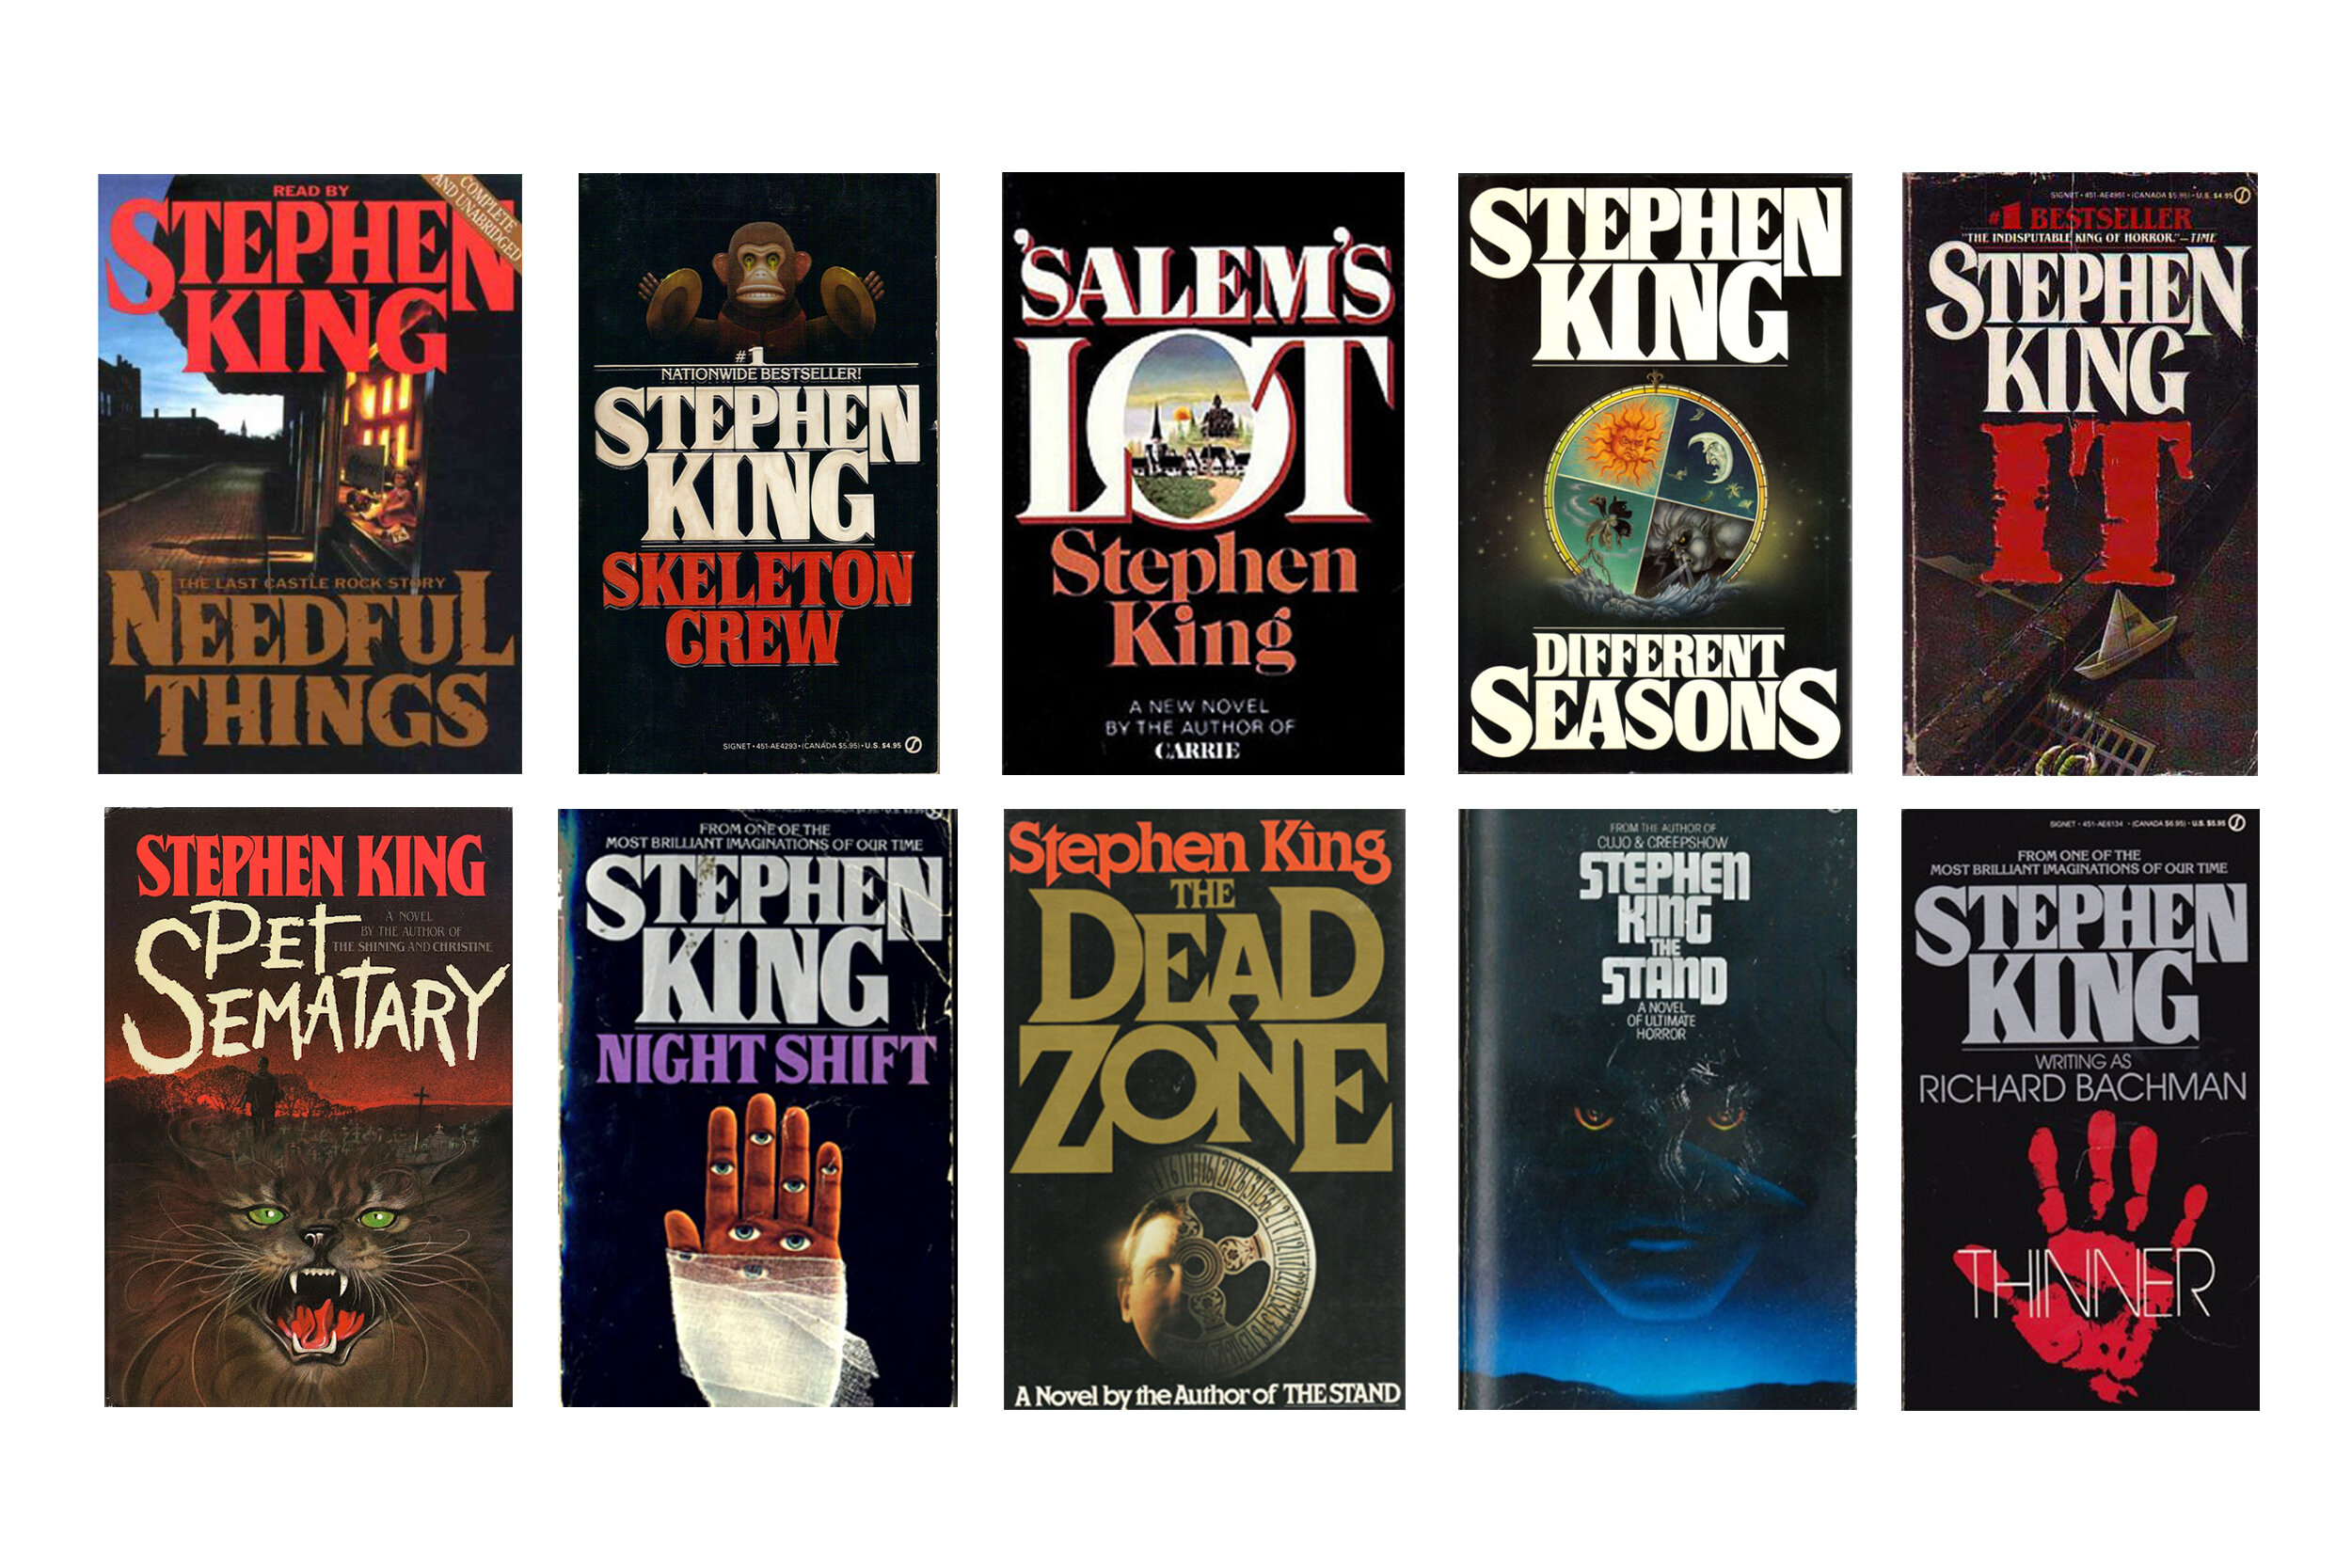 Лучшие произведения стивена кинга. Всеикниги Стивена Кинга. Американские старые обложки книг Стивена Кинга.